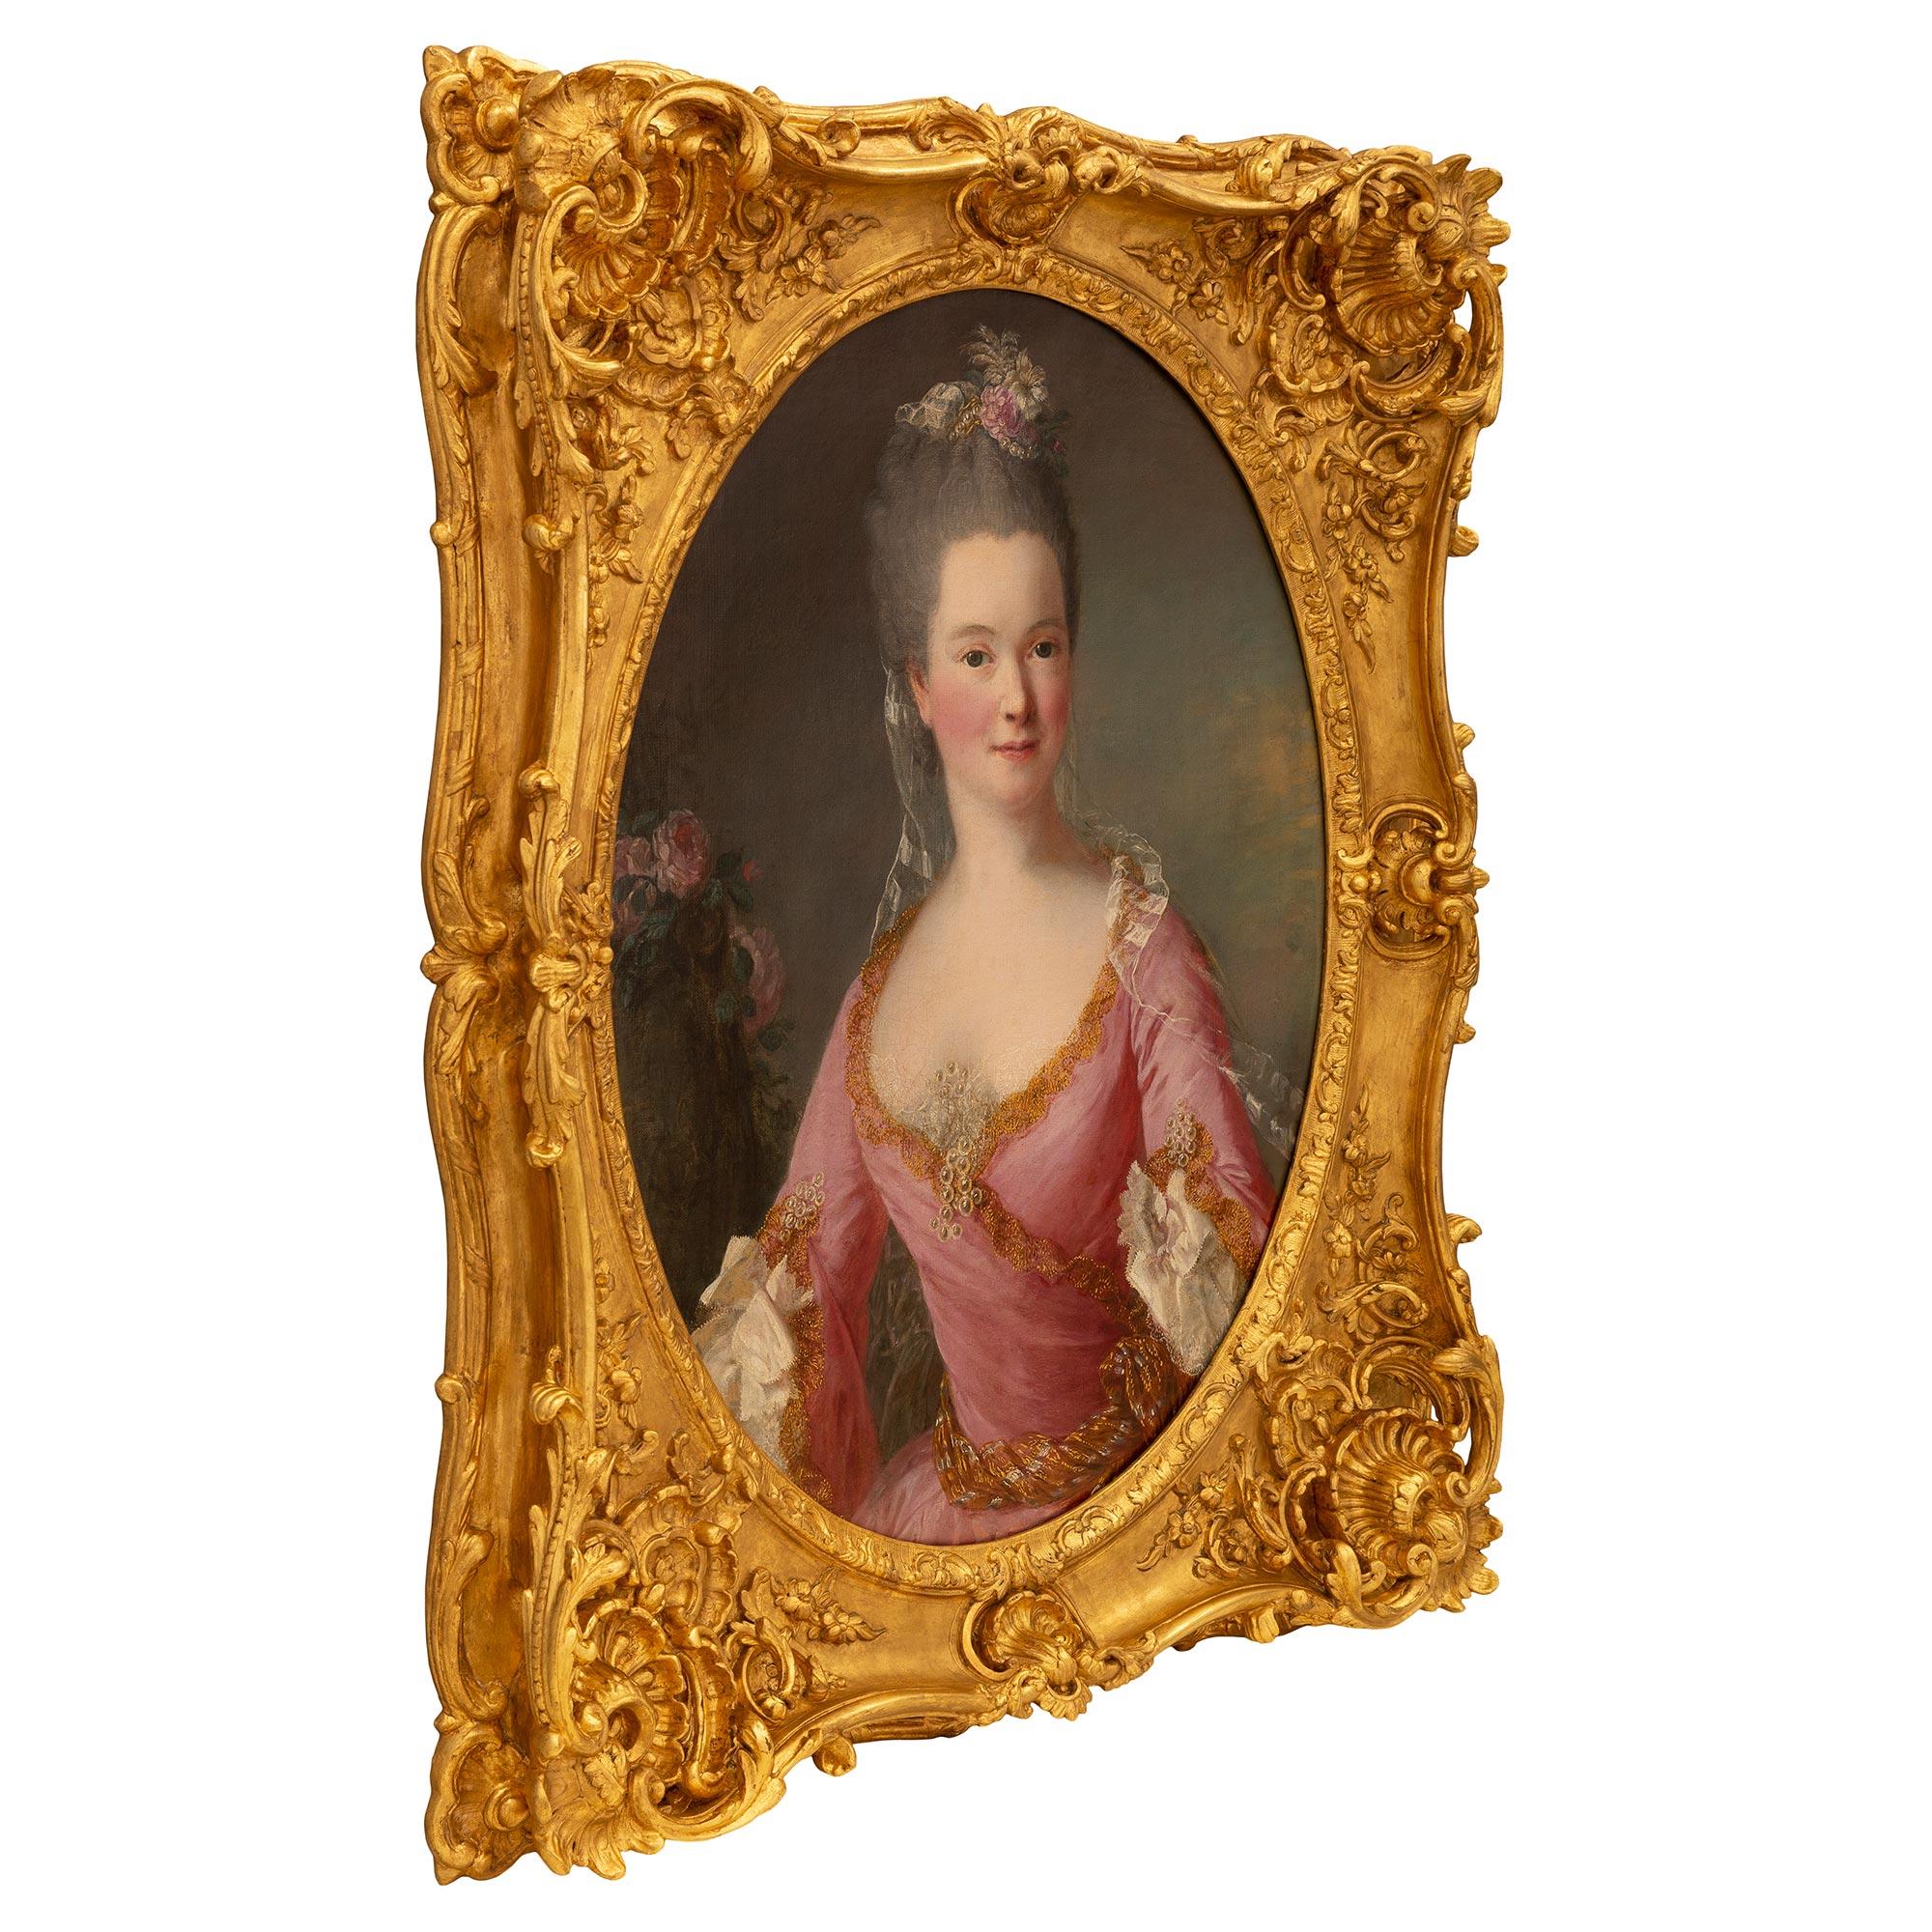 Eine atemberaubende und extrem hohe Qualität Continental frühen 19. Jahrhundert Louis XV st. Öl auf Leinwand Porträt. Das Gemälde zeigt ein wunderschönes junges Mädchen in einem eleganten, mit Perlen besetzten rosa Kleid. Sie trägt ihr Haar zu einer